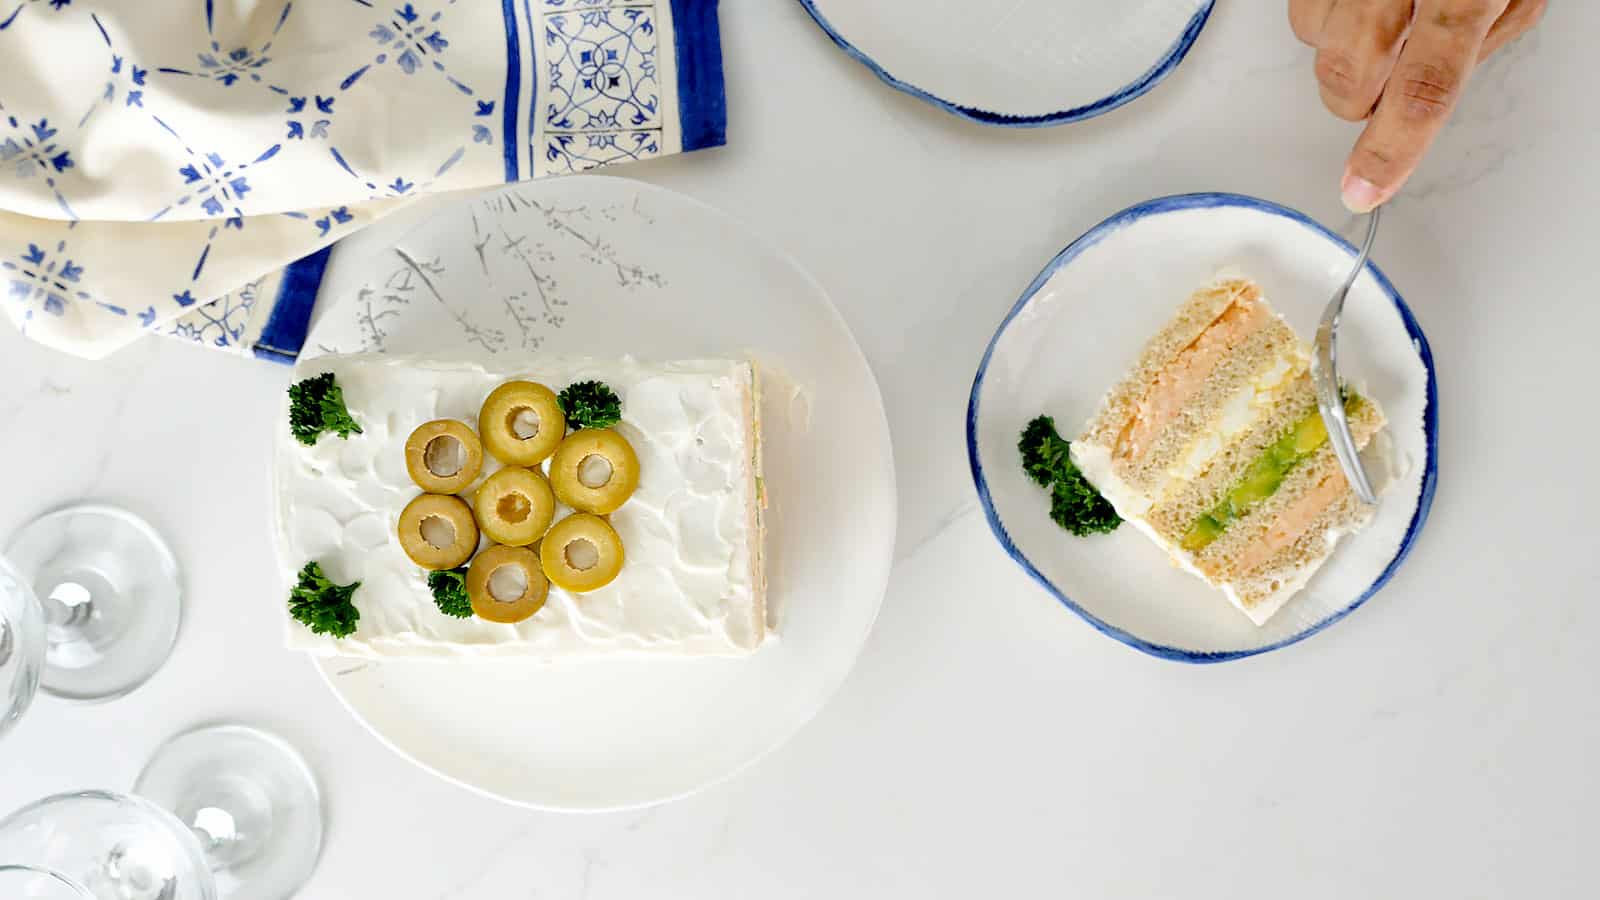 Shrimp and avocado sandwich cake.